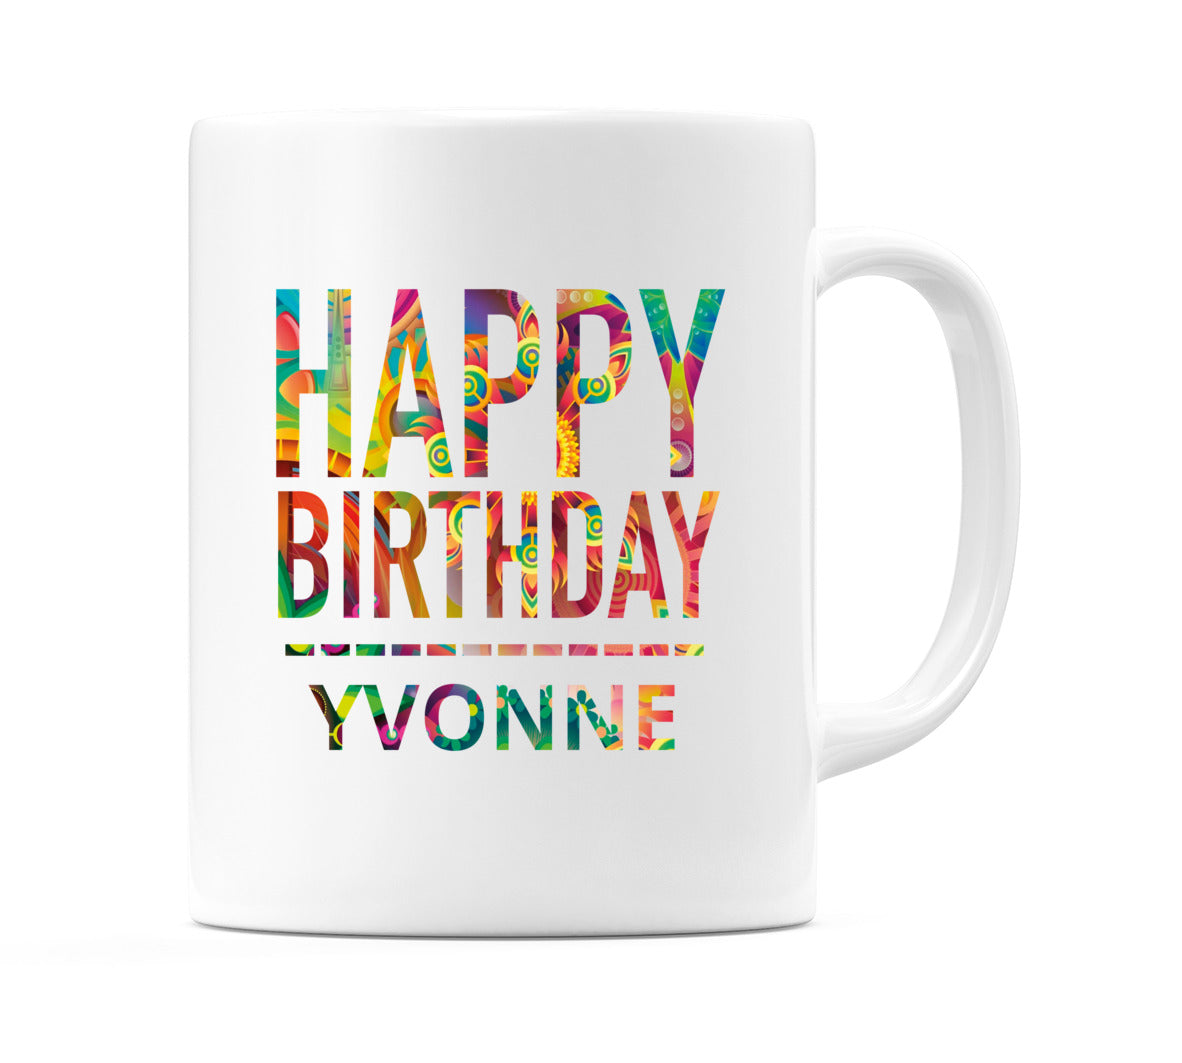 Happy Birthday Yvonne (Tie Dye Effect) Mug Cup by WeDoMugs